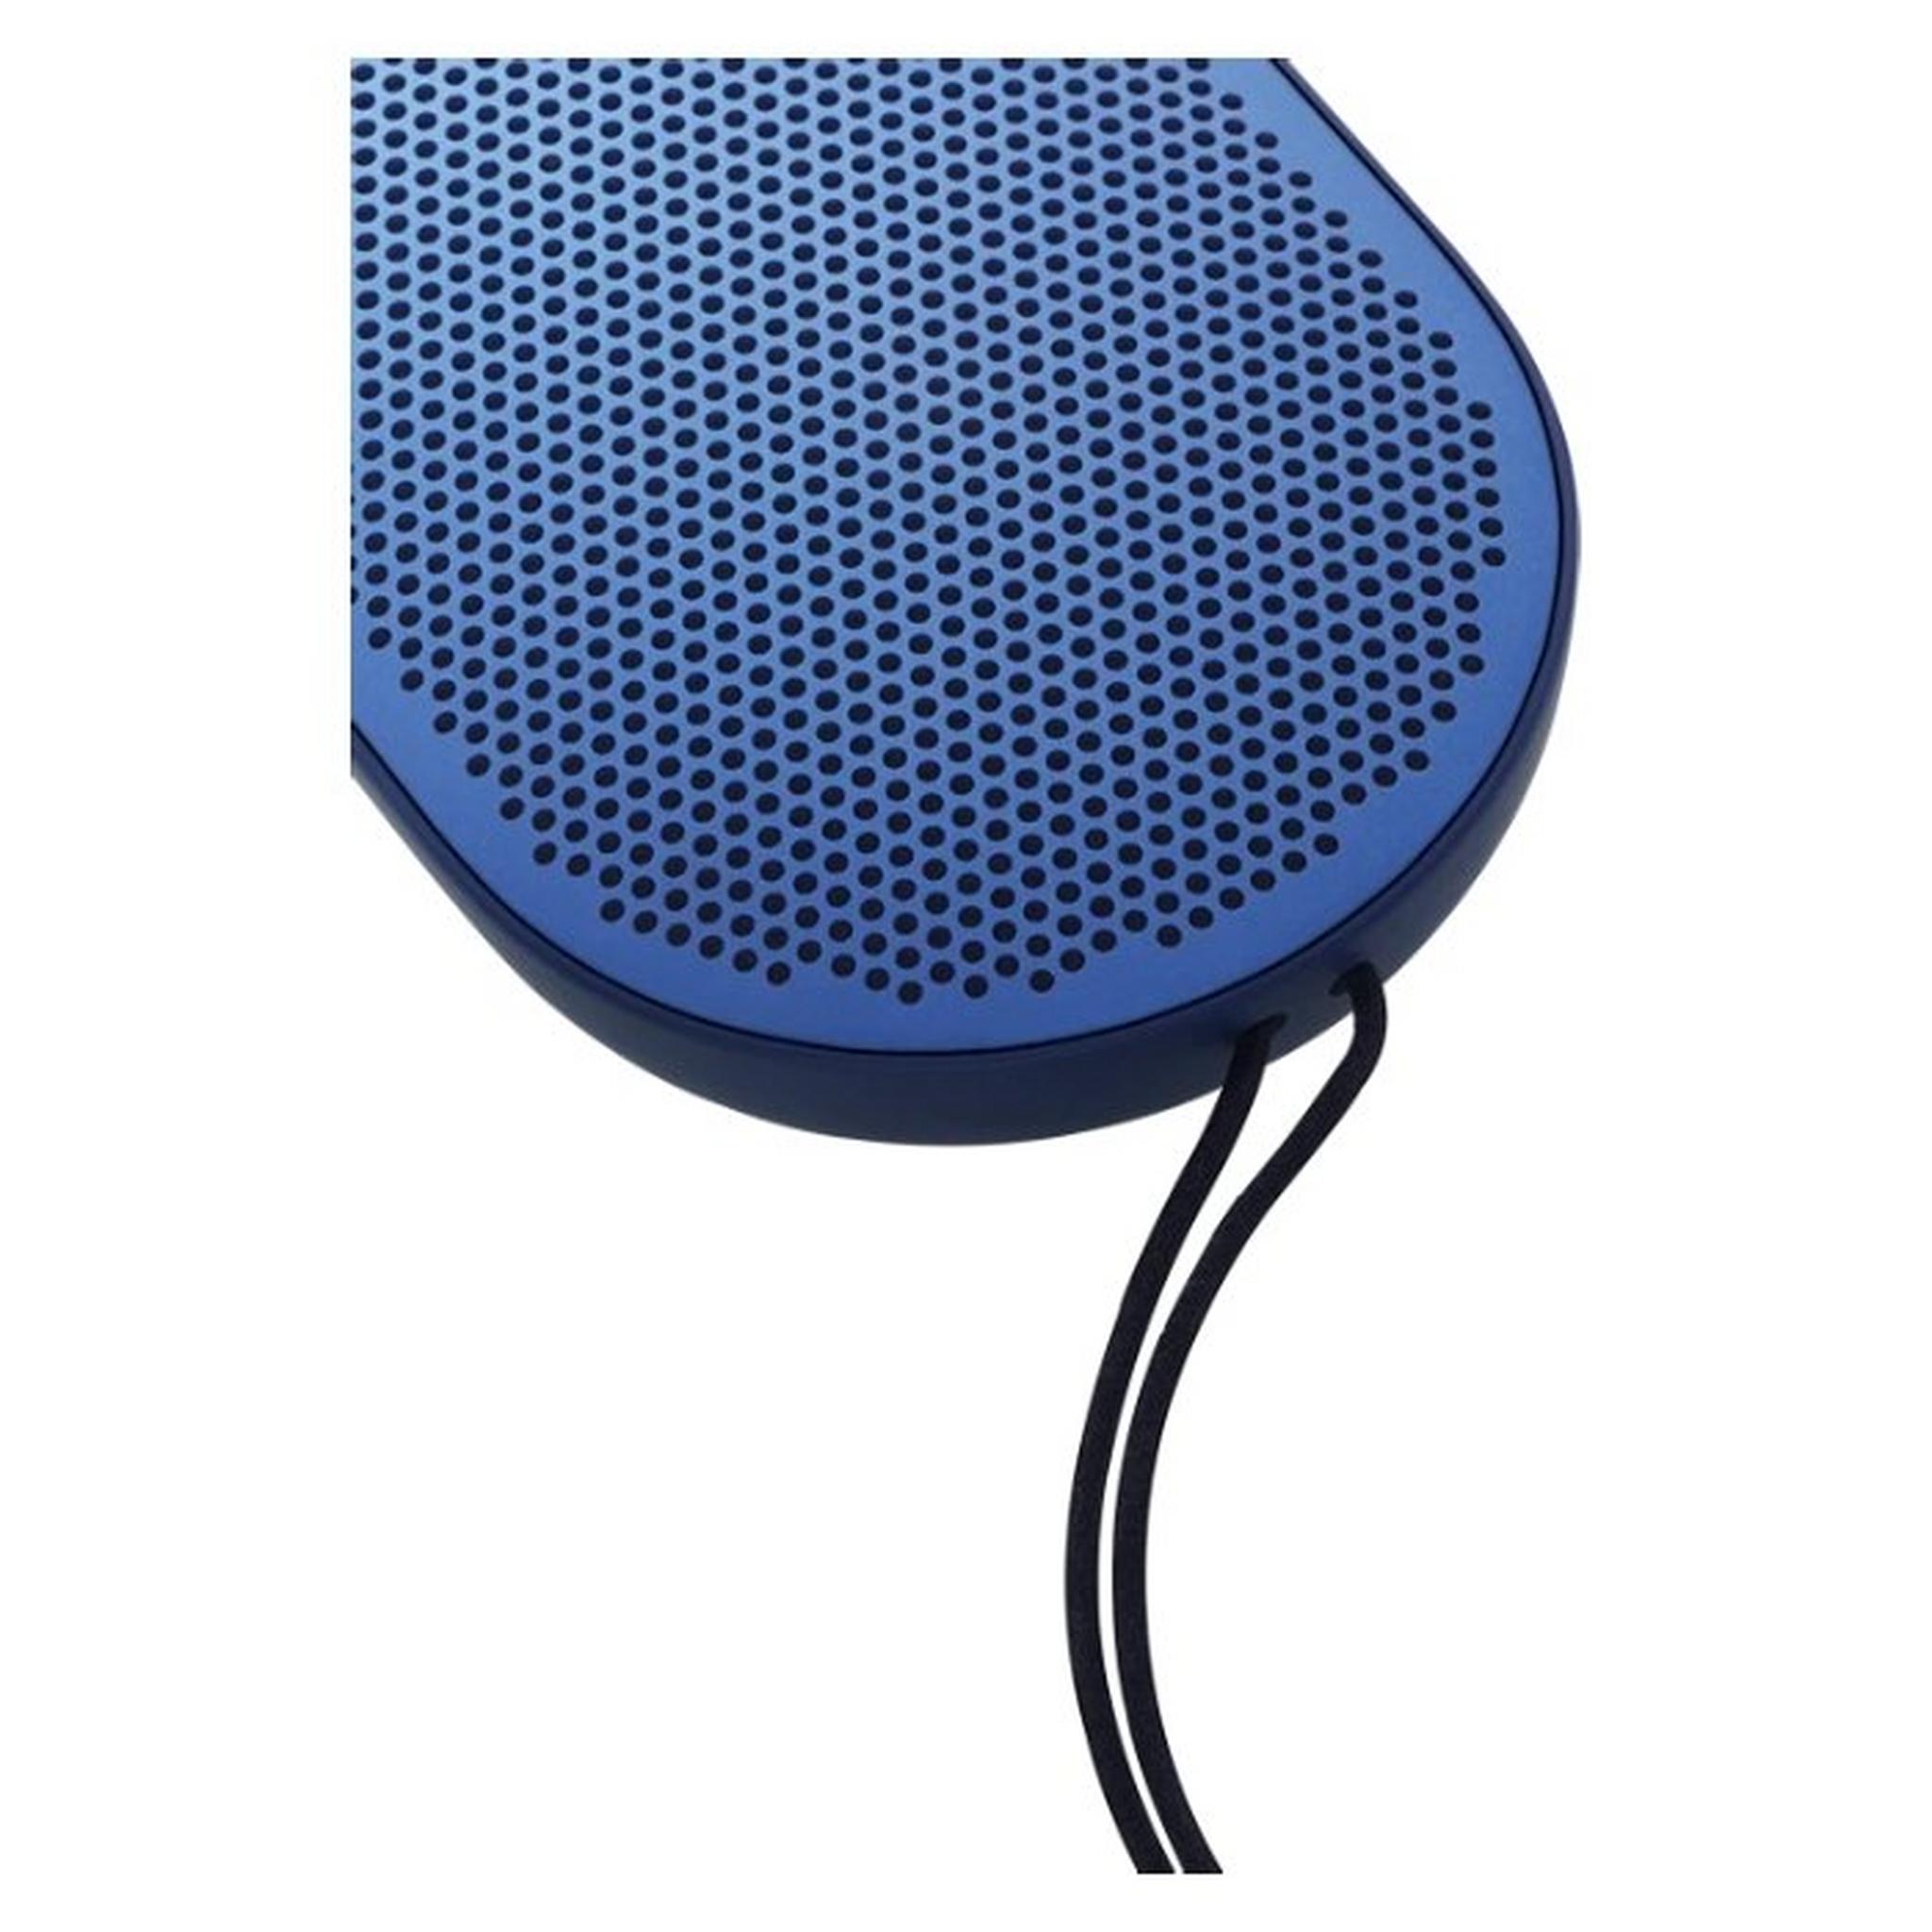 مكبر الصوت لاسلكي المحمول بيوبلاي بي2 بتقنية البلوتوث - أزرق